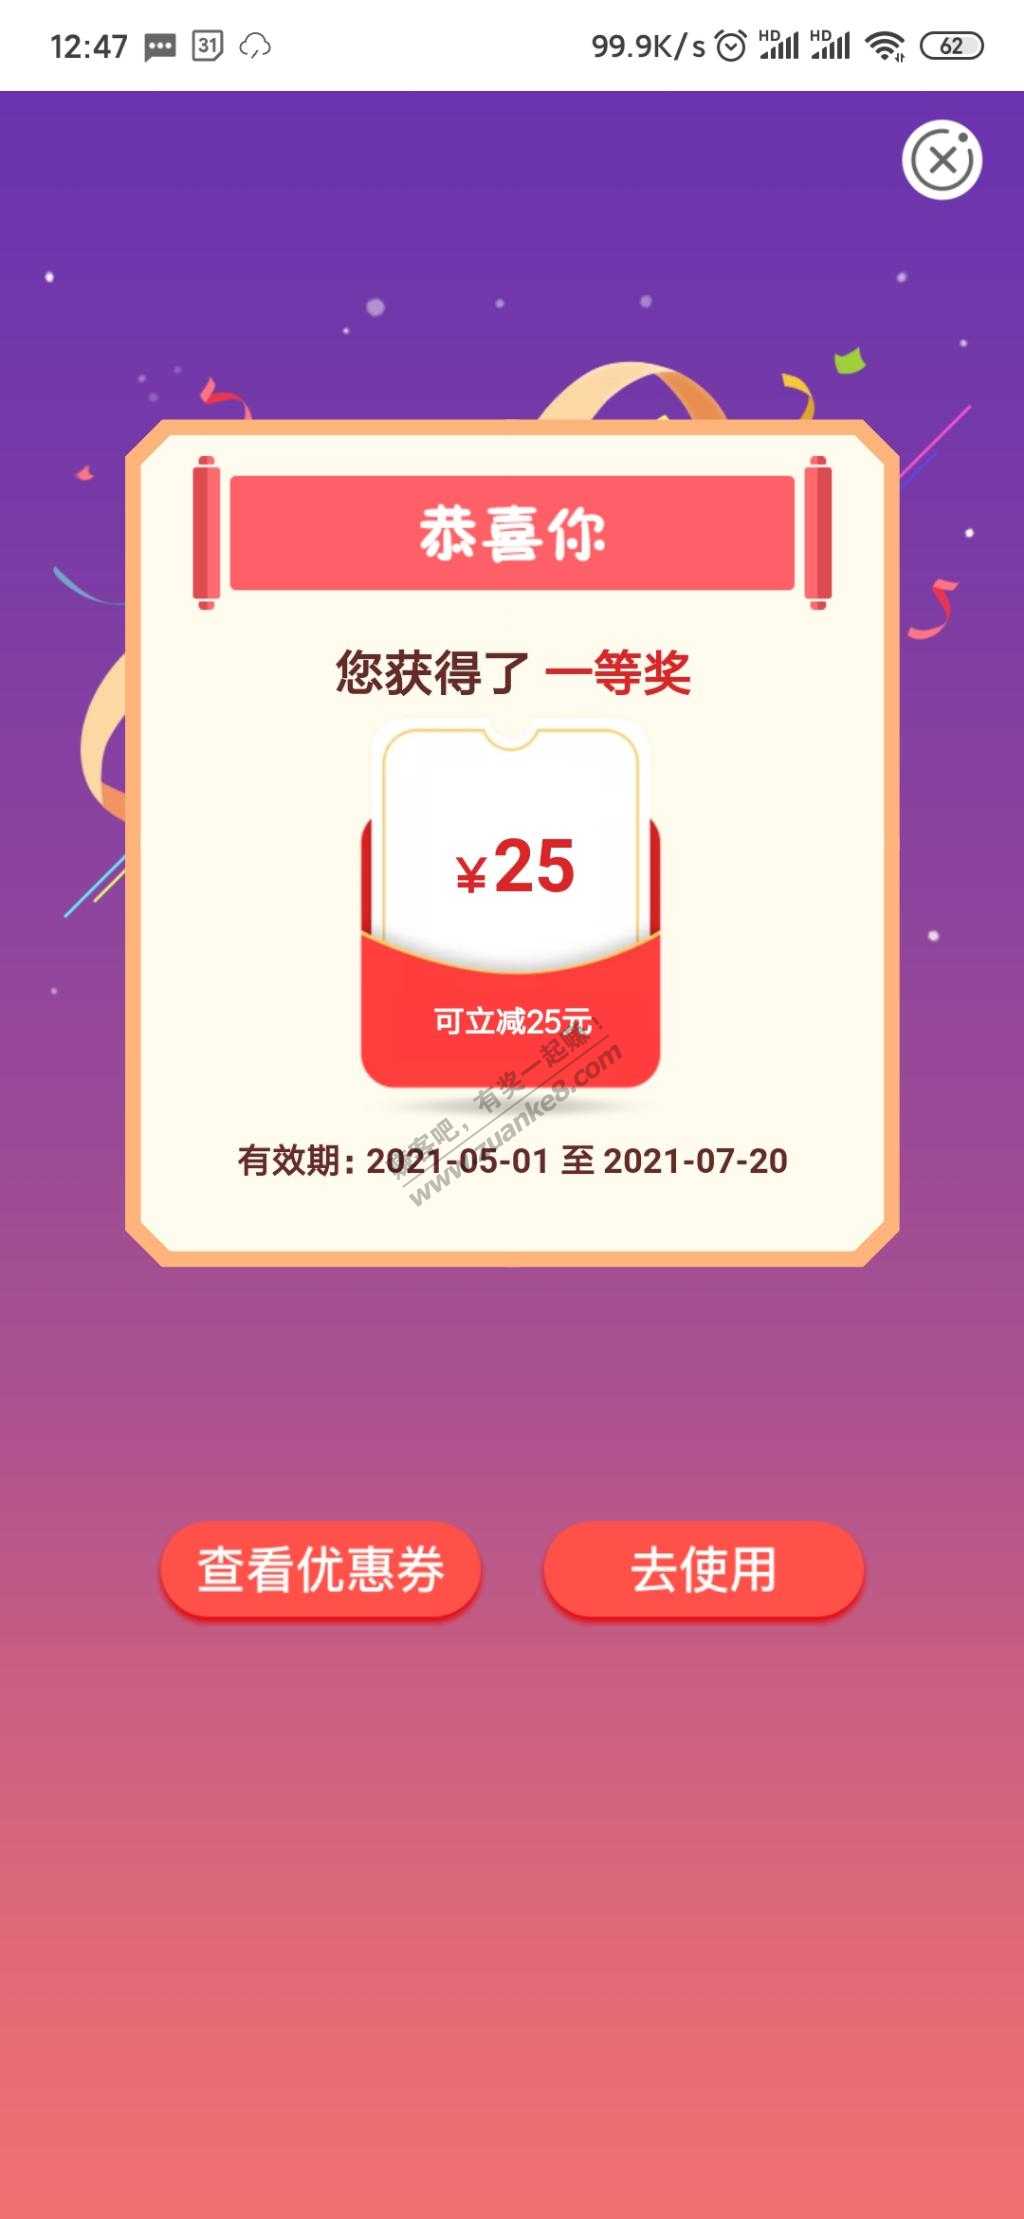 25大水-惠小助(52huixz.com)